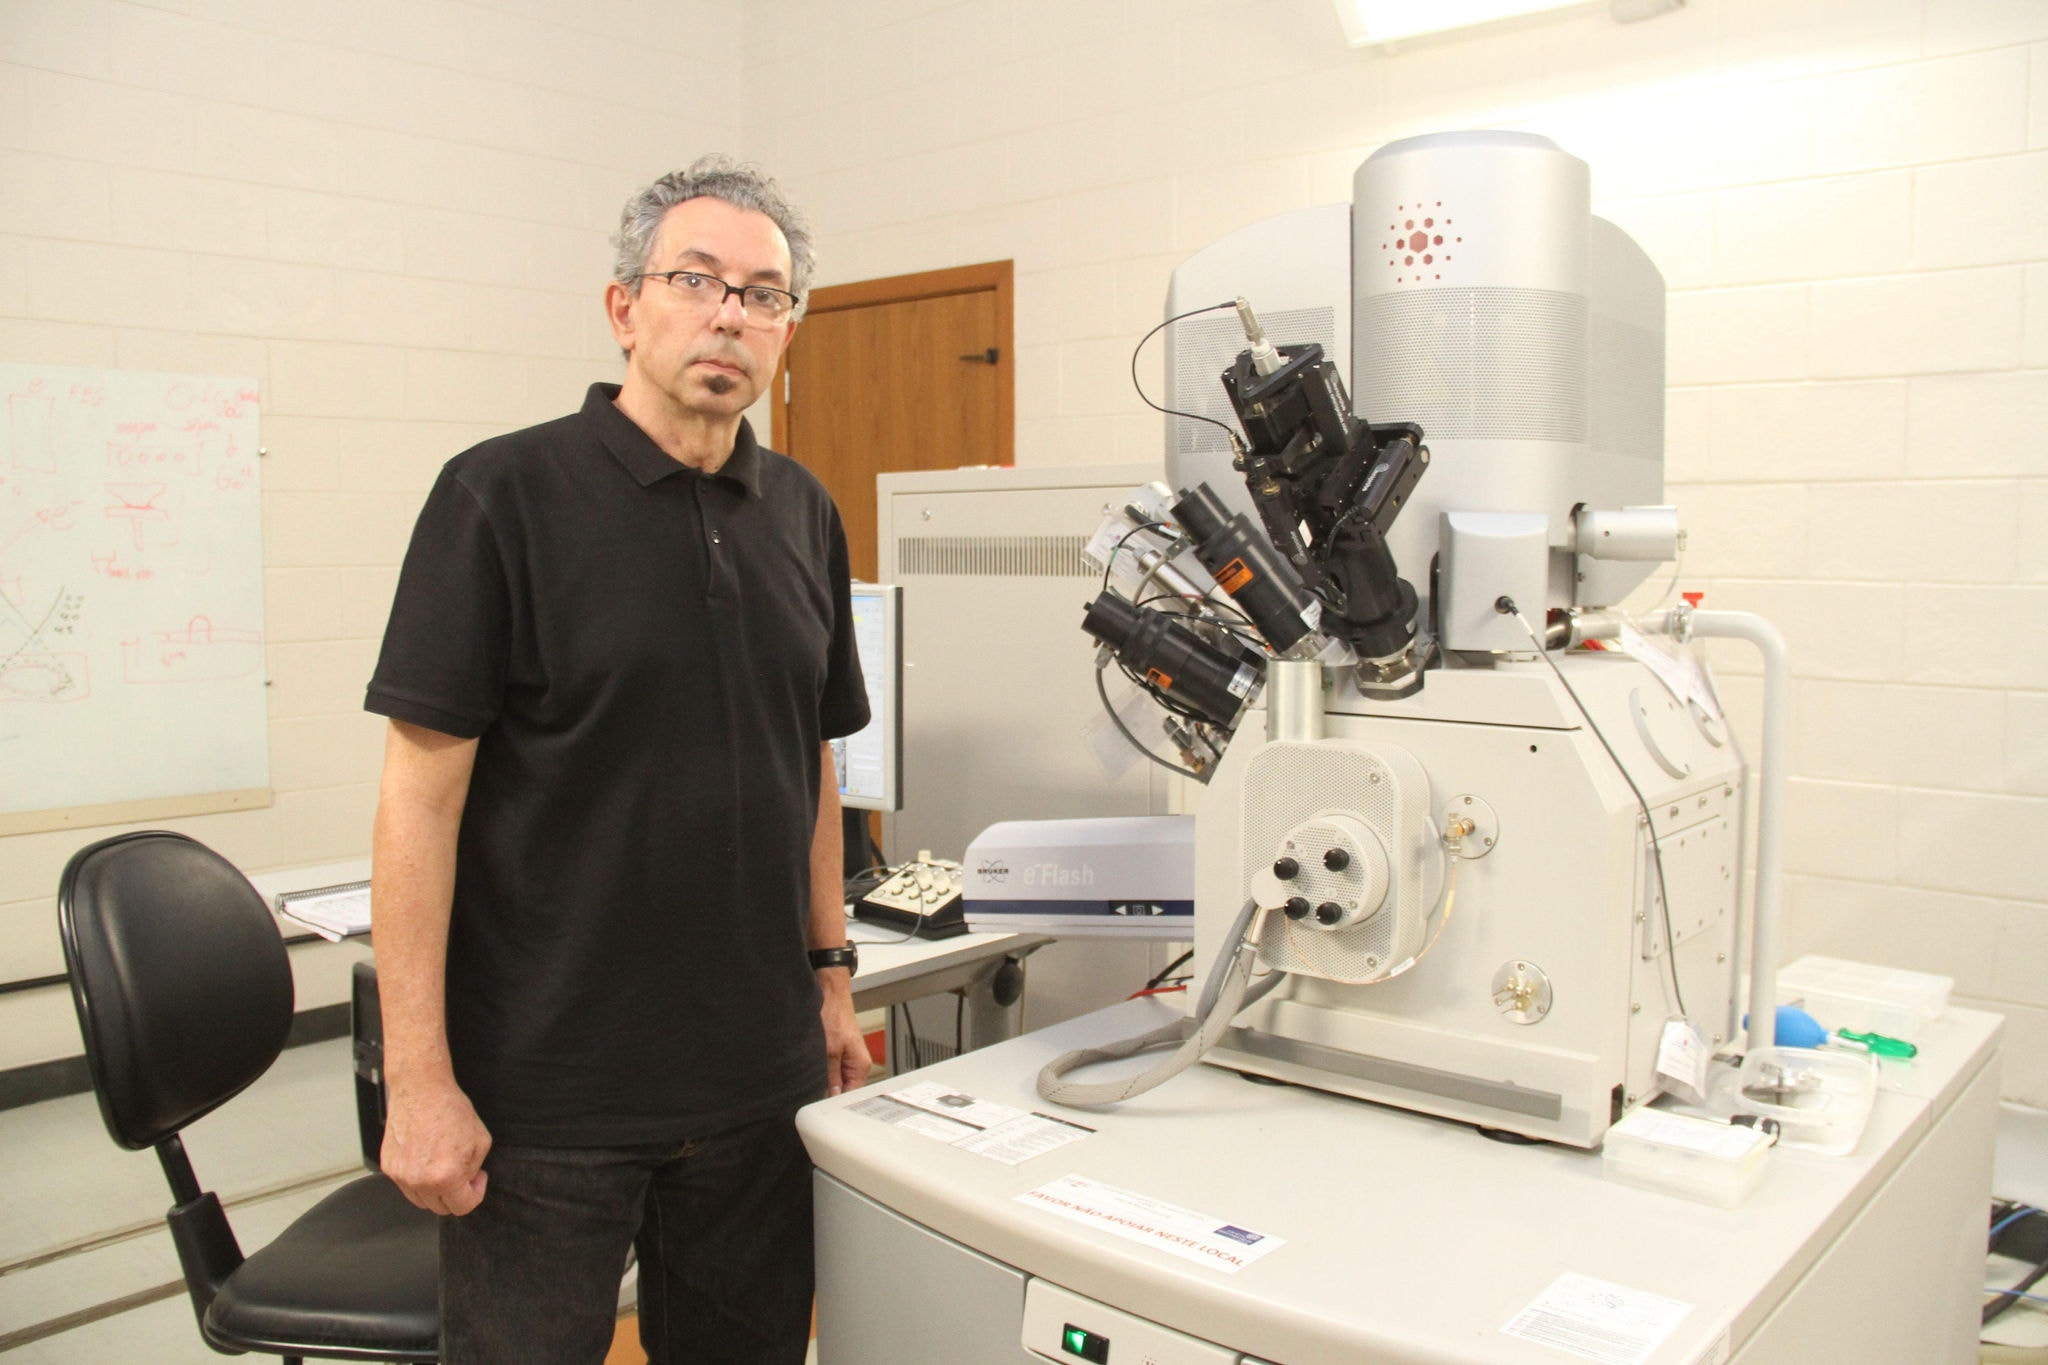 A microscopia é essencial para pesquisas da universidade e para a indústria, explica o diretor do centro Wagner Nunes